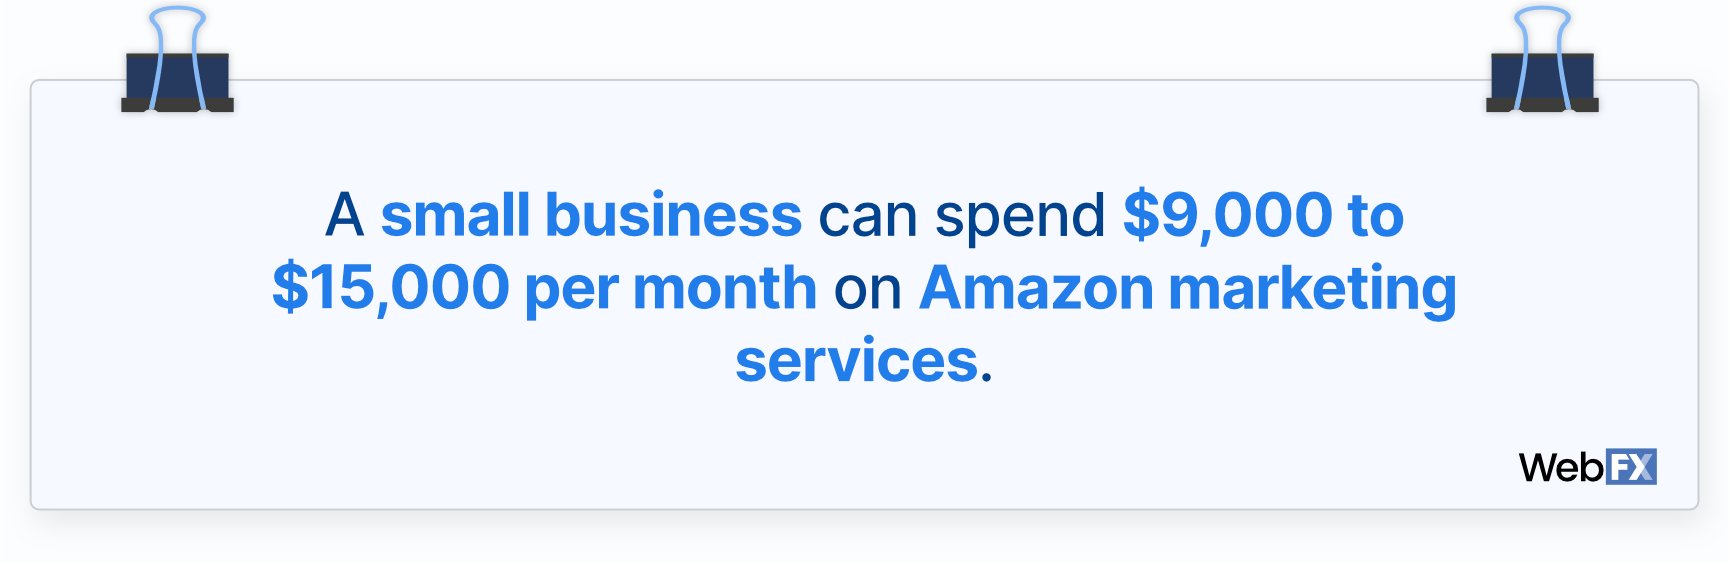 亚马逊对小企业的营销成本